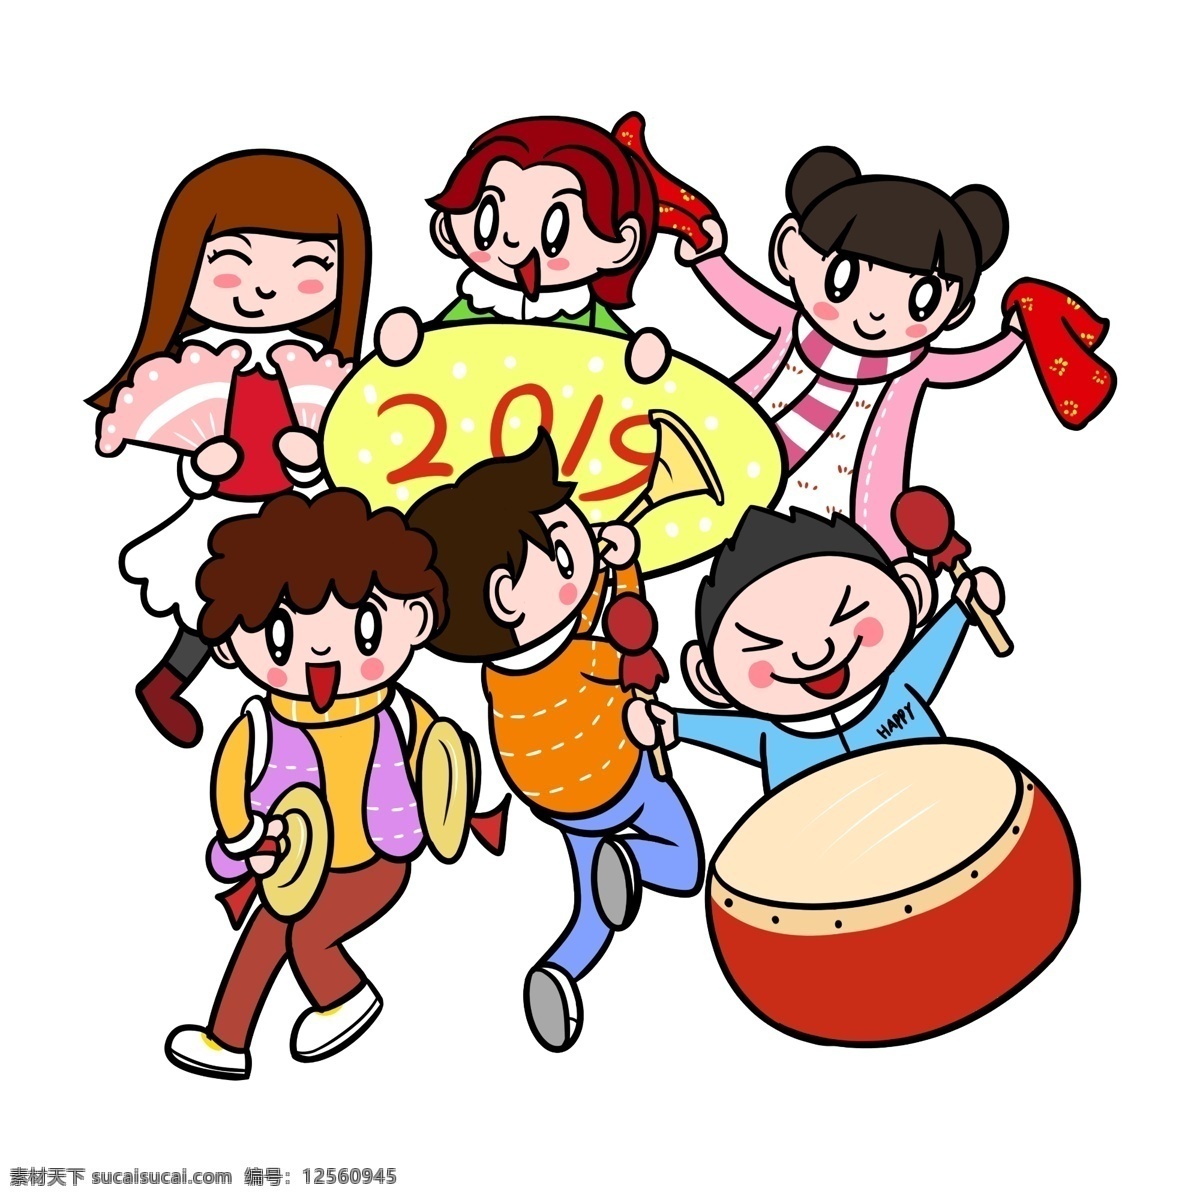 卡通 儿童 2019 贺 新年 透明 底 祝贺 过新年 新年场景 卡通儿童 卡通新年 新年祝福 新年快乐 春节